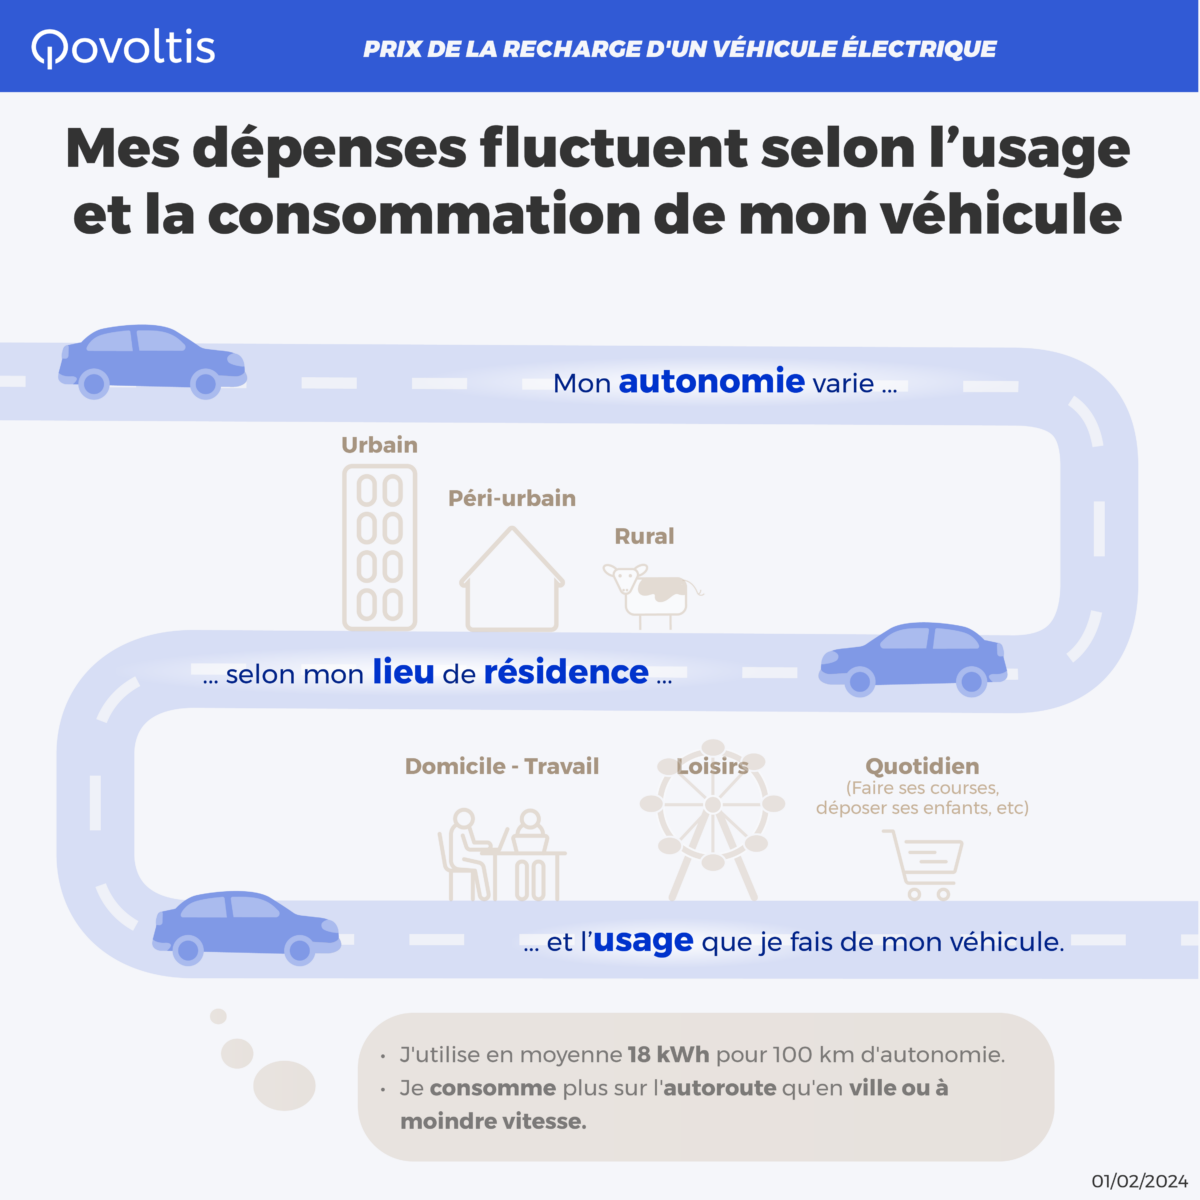 3ème page de l'infographie "Prix de la recharge d'un véhicule"